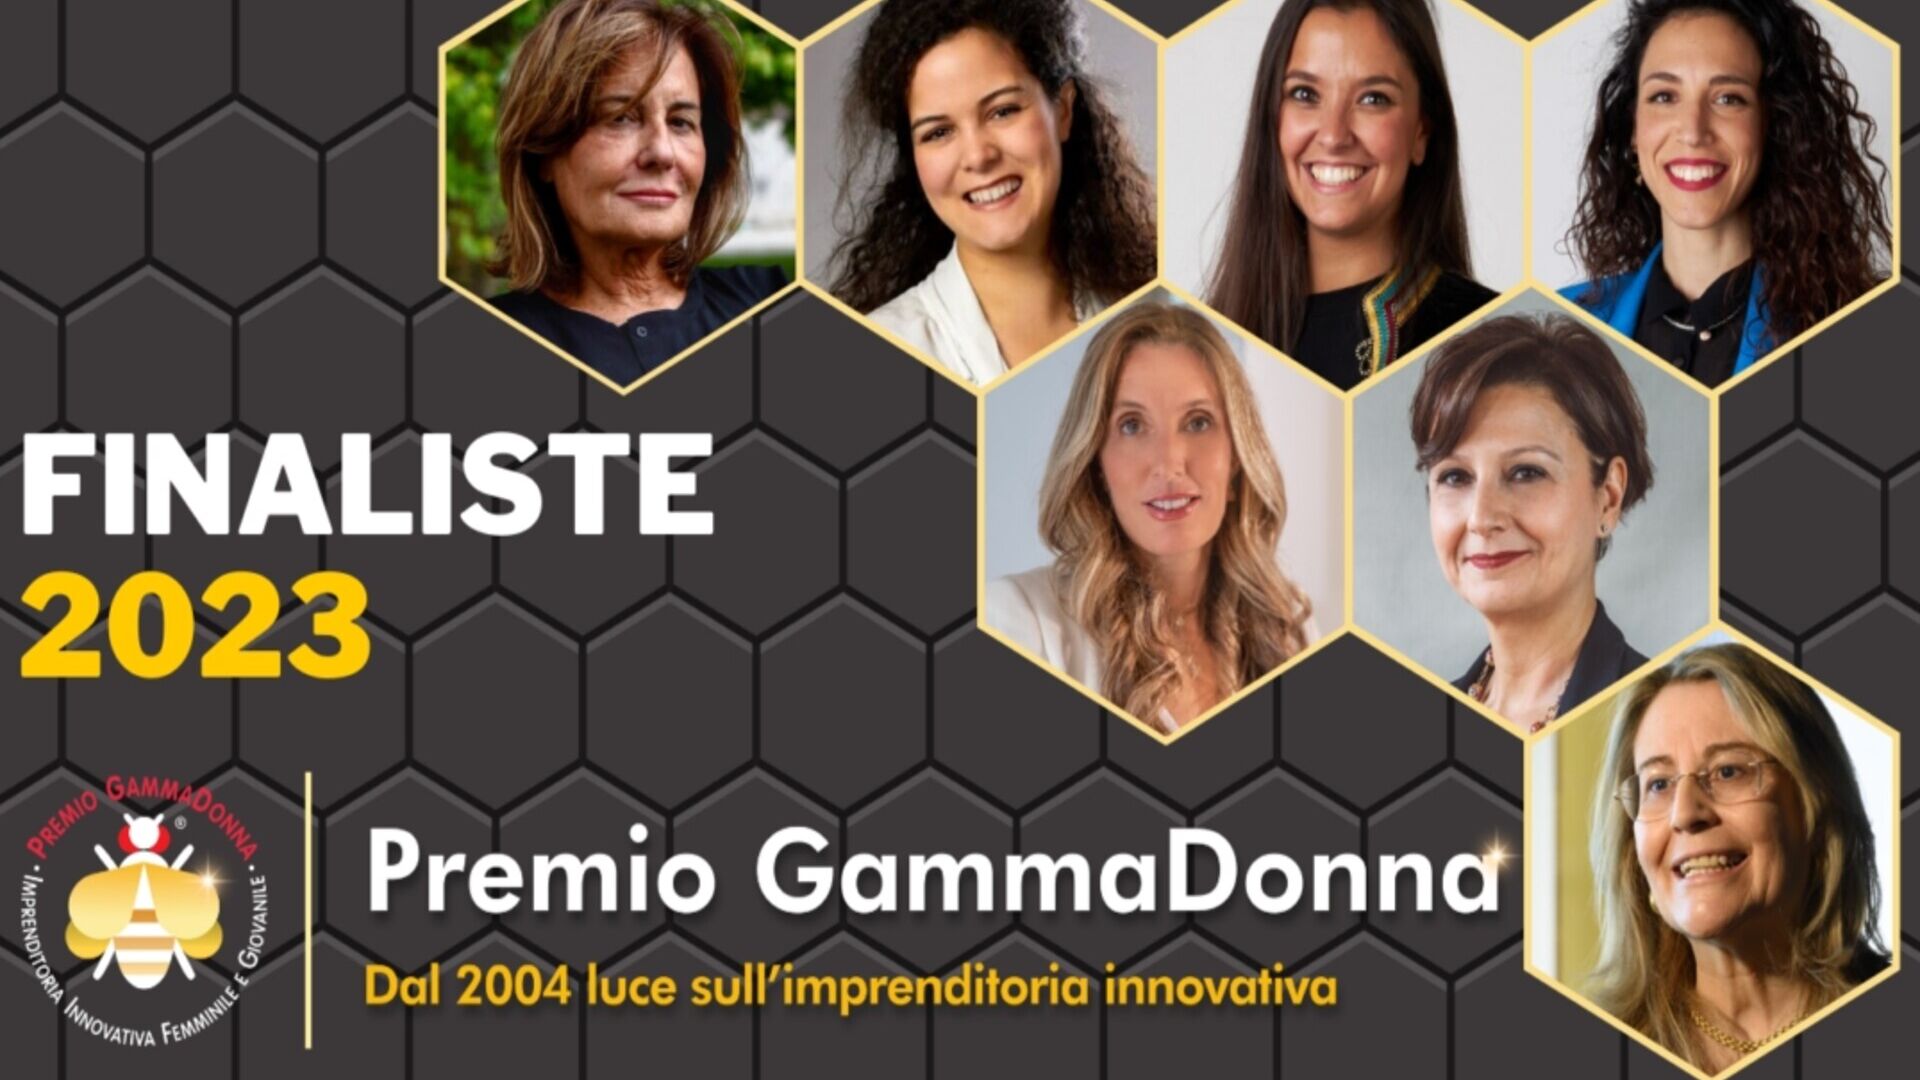 Premio GammaDonna: le finaliste 2023